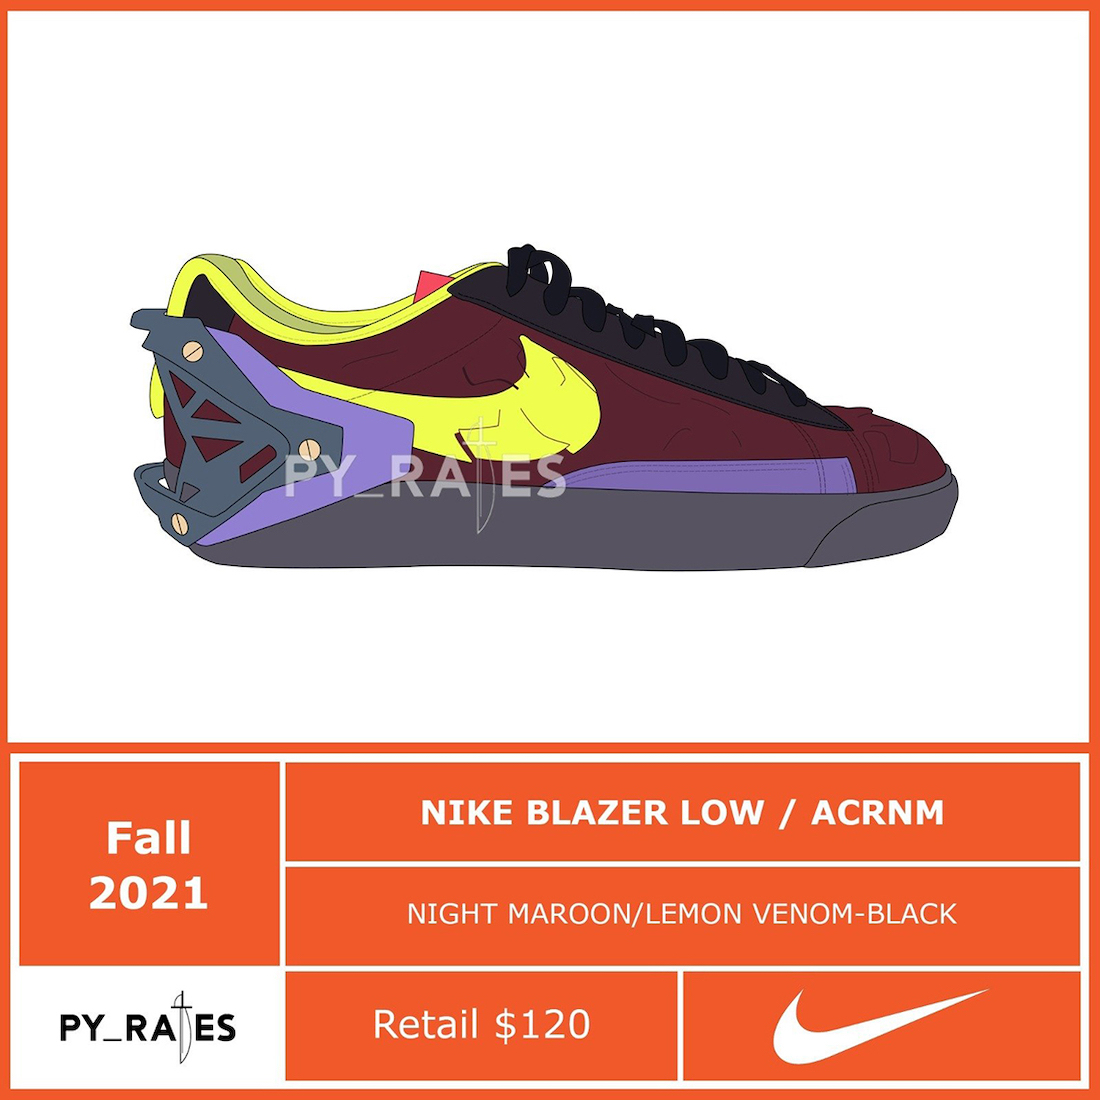 Acronym Nike Blazer Low Fall 2021